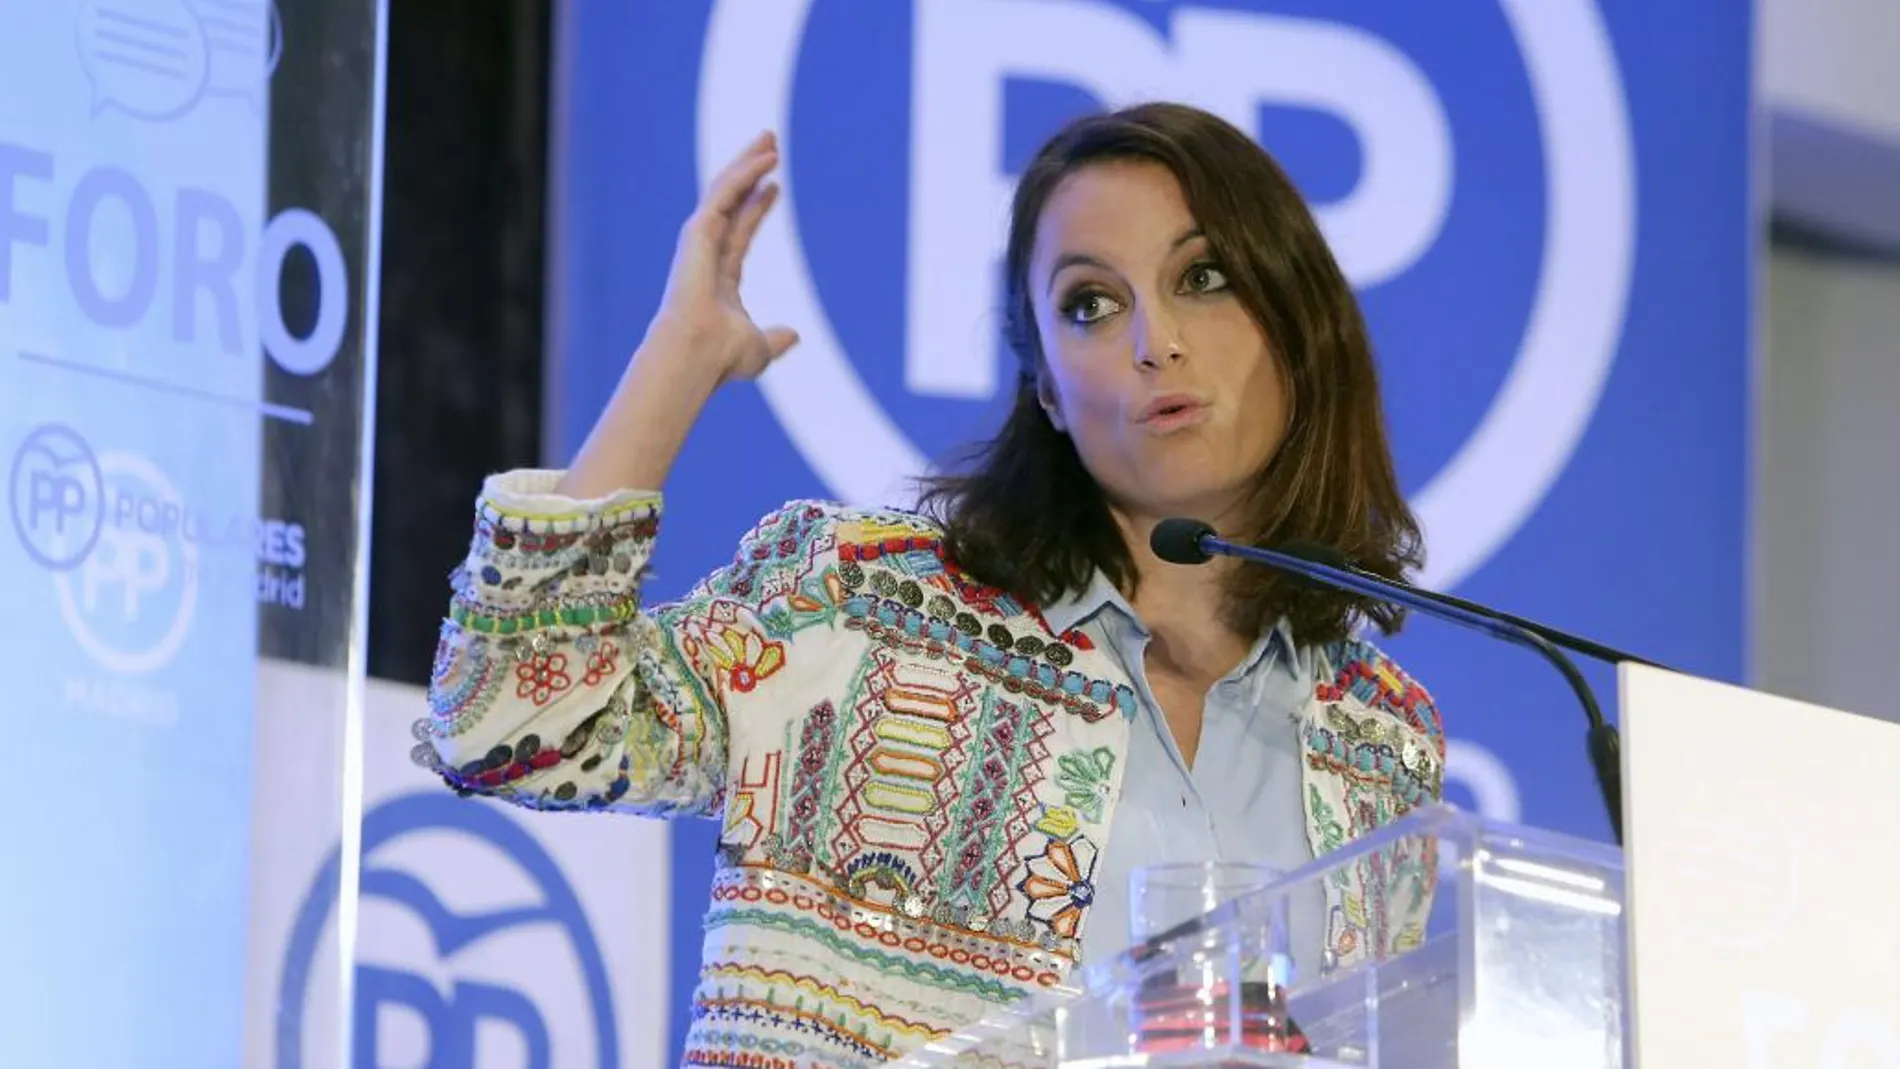 La vicesecretaria de Estudios y Programas del Partido Popular y candidata a las elecciones autonómicas de Cataluña, Andrea Levy